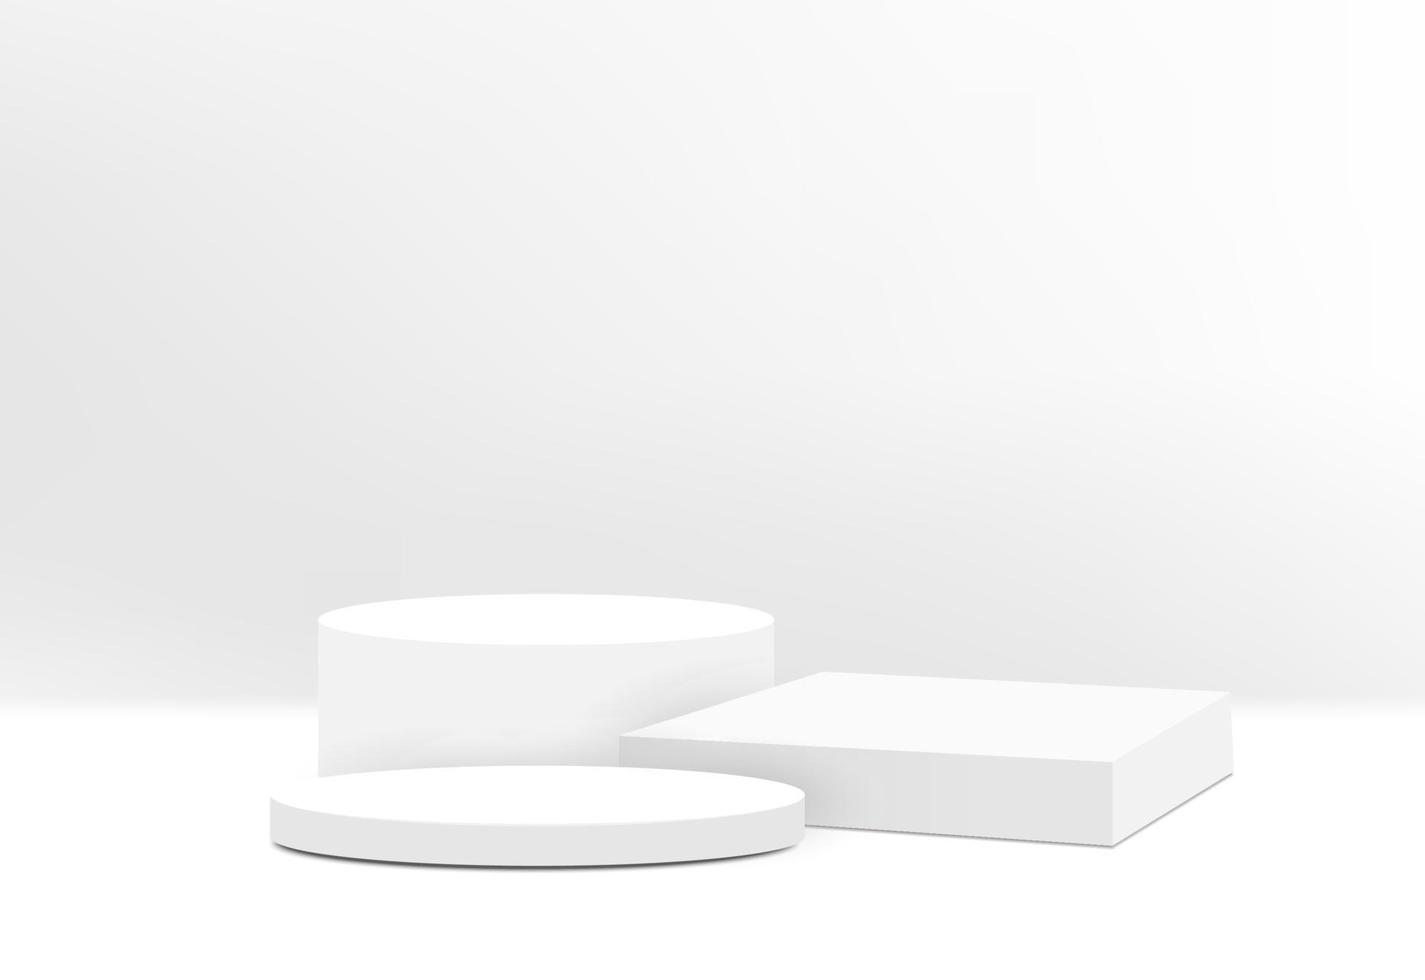 abstract wit podium met wandscène voor productpresentatie vector